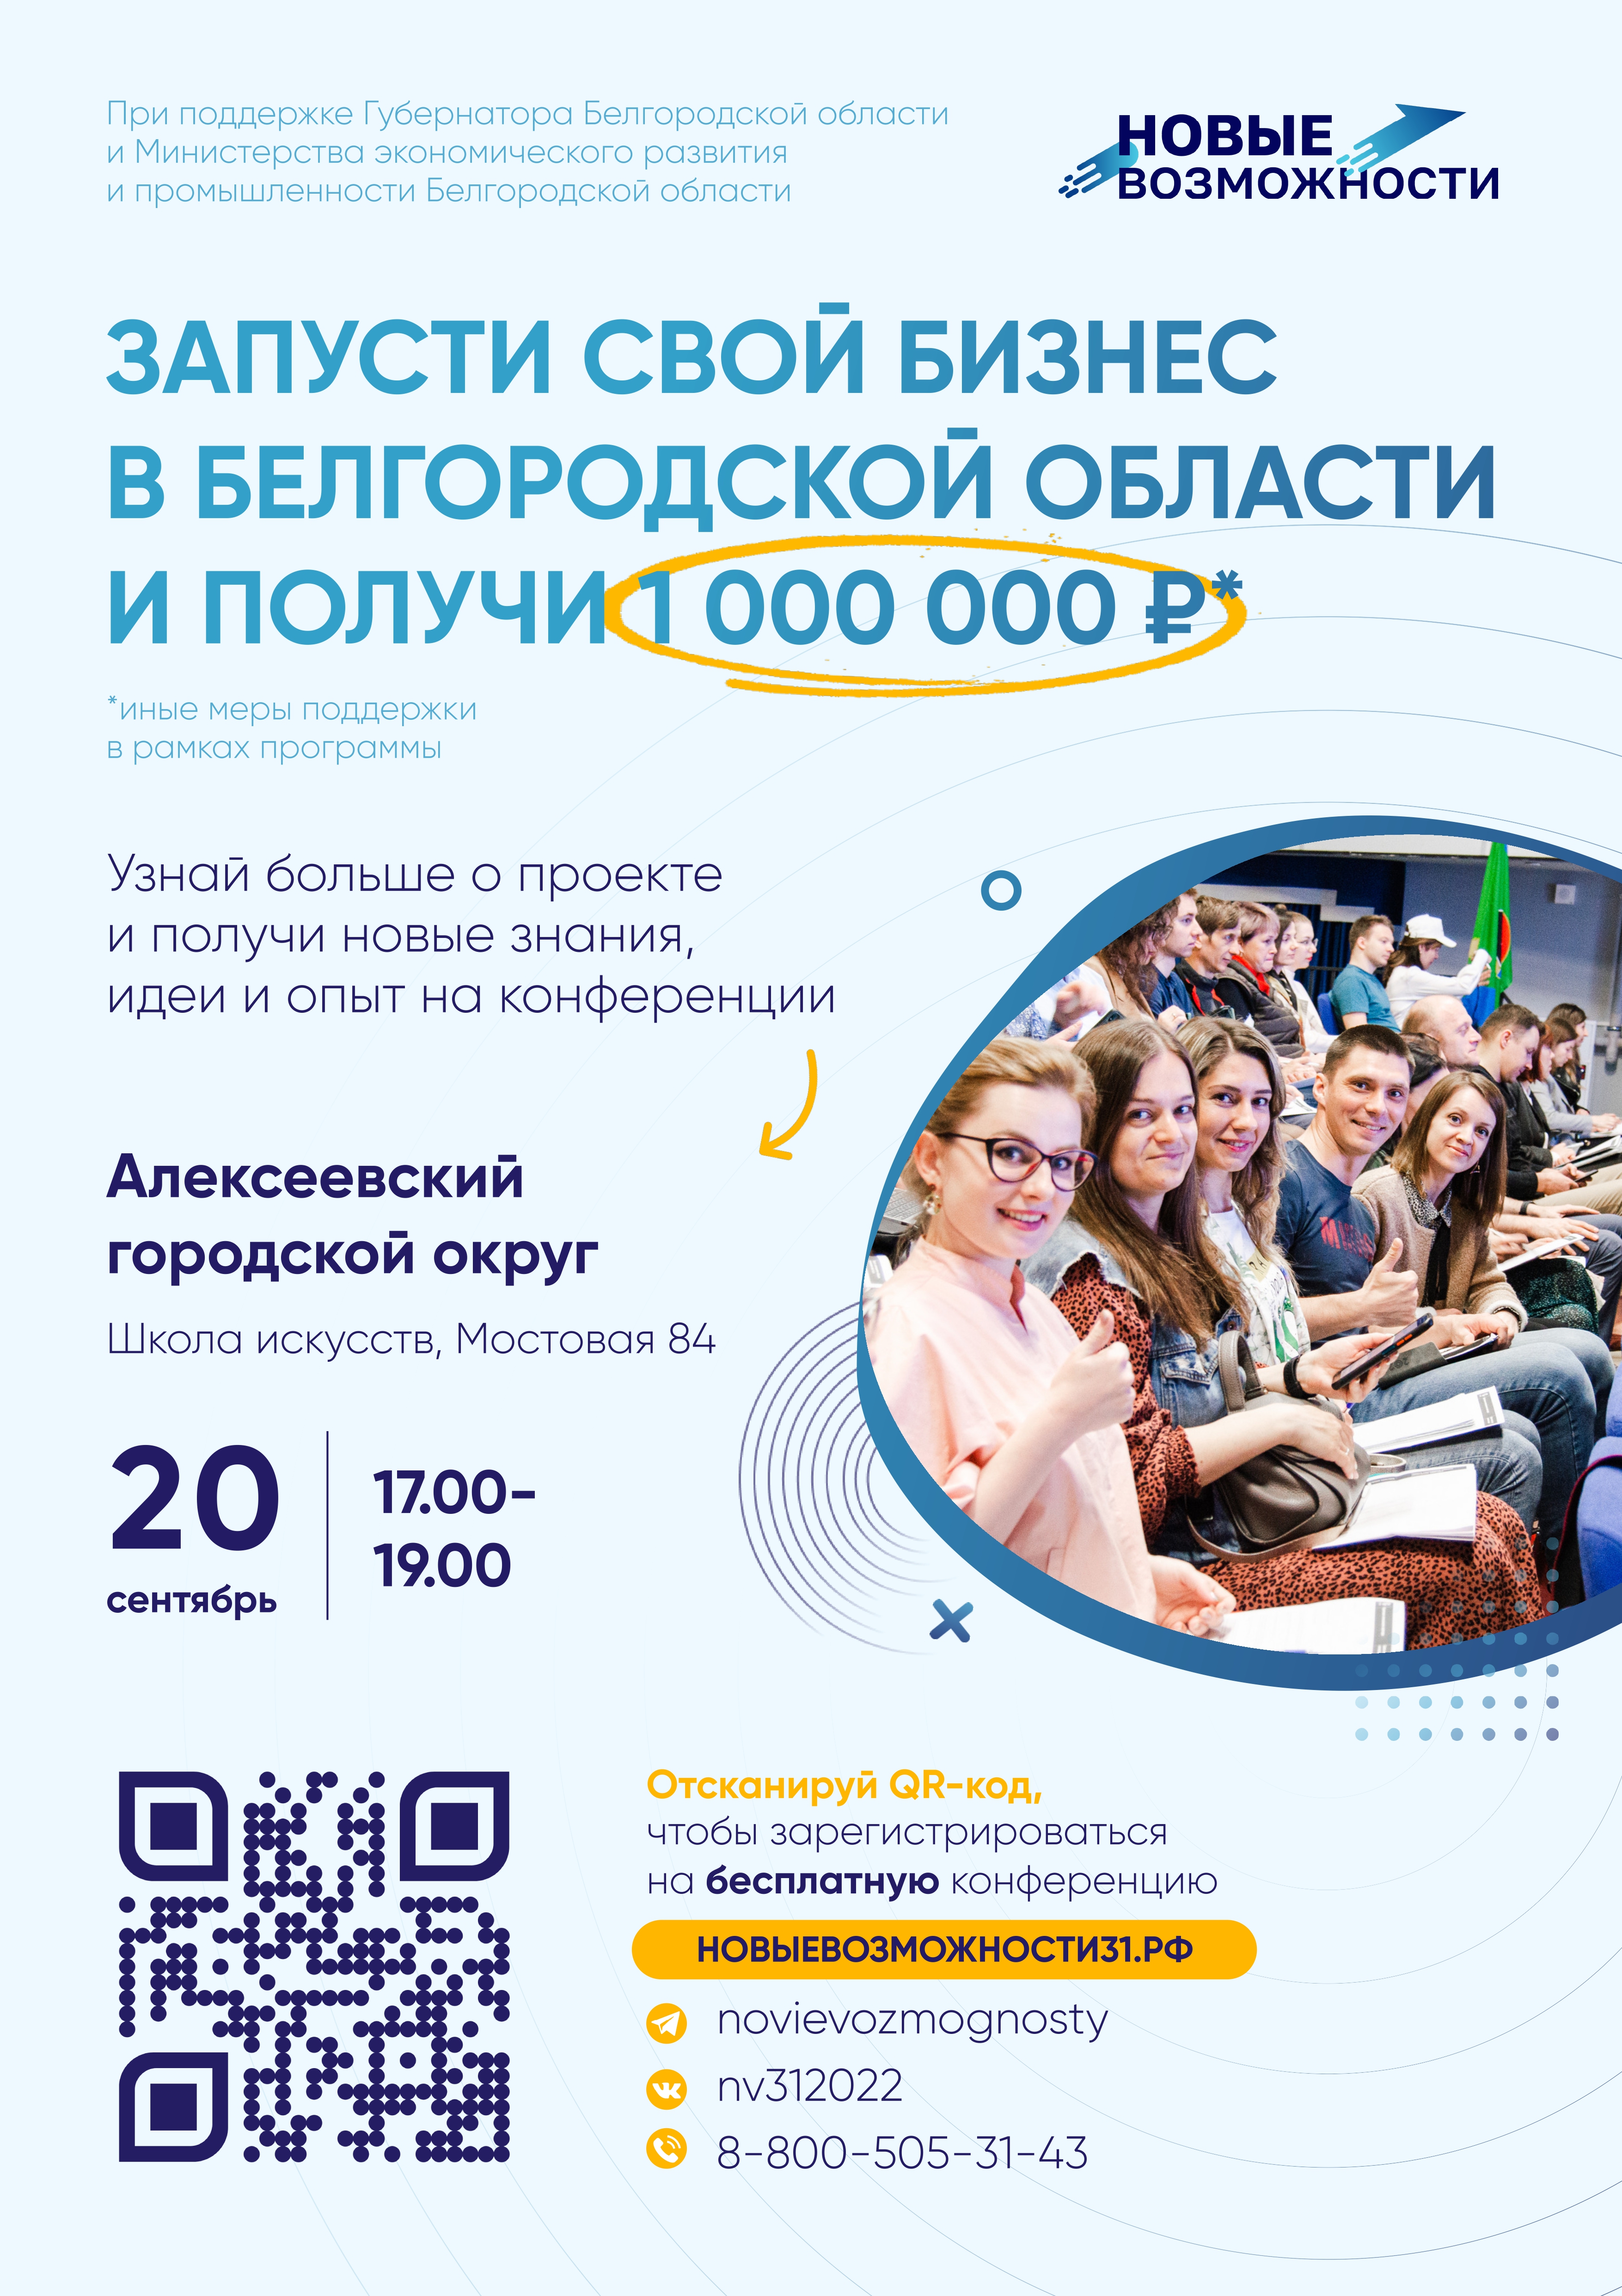 Запусти свой бизнес в Белгородской области и получи 1 000 000 рублей